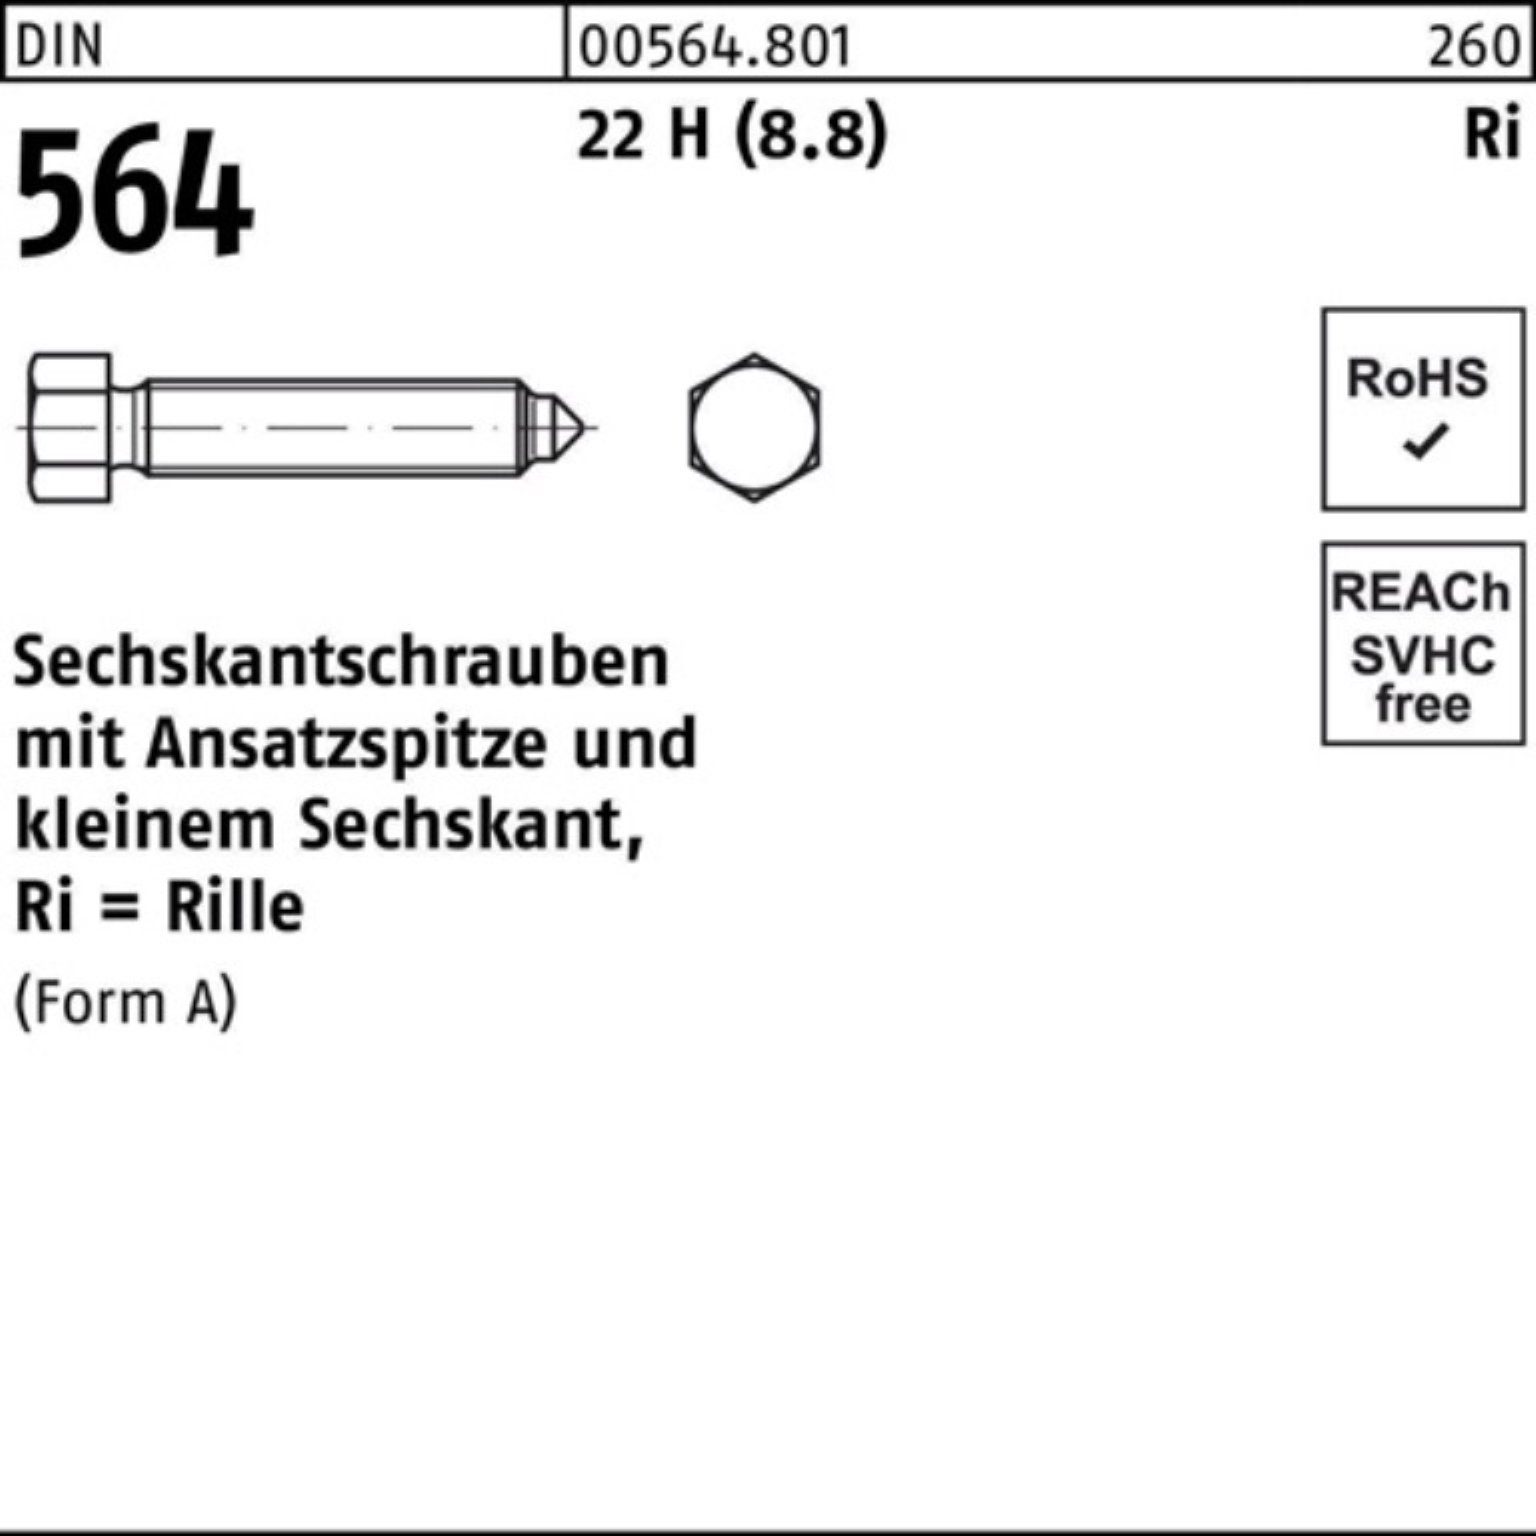 DIN AM 50 16x Sechskantschraube 100er Ansatzspitze Reyher 22 H Sechskantschraube 564 Pack (8.8)